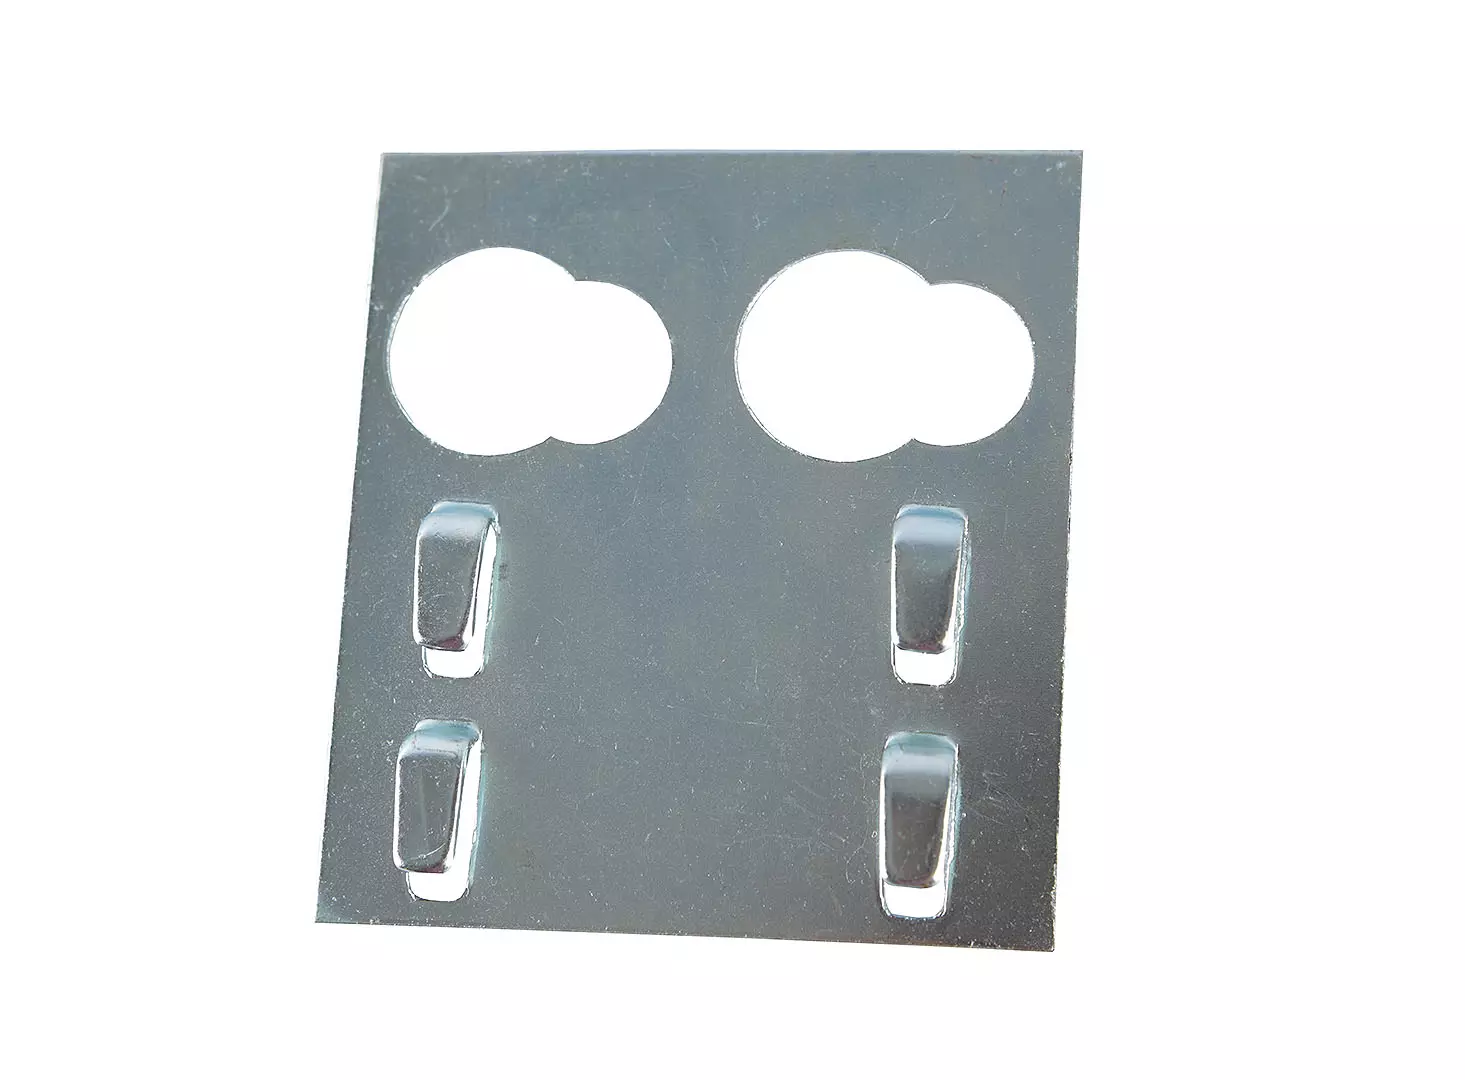 placa conector para escalerillas portaconductores